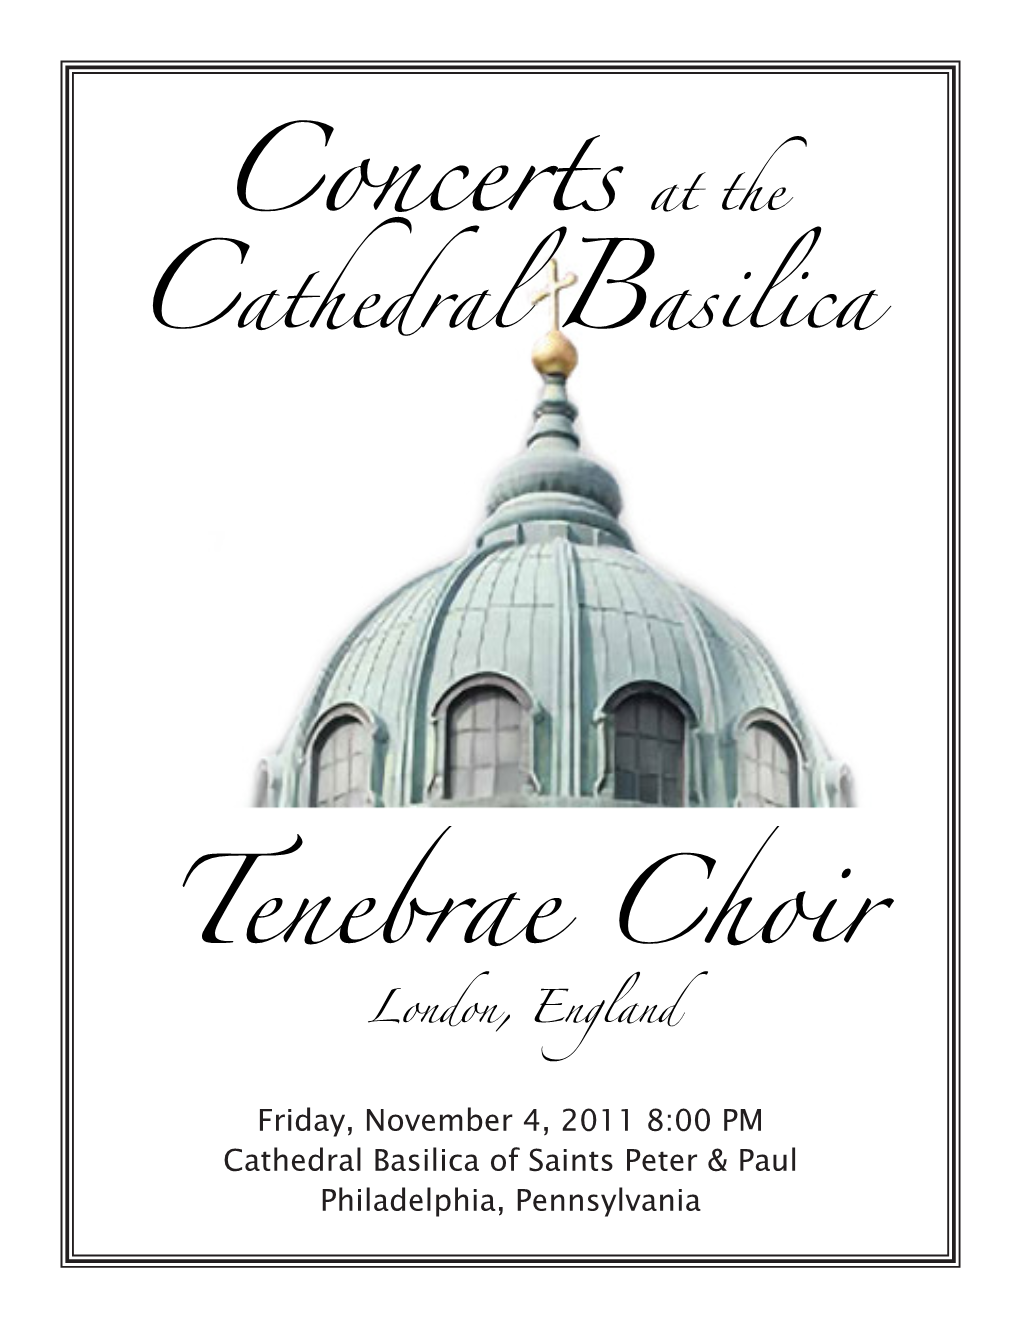 Tenebrae Choir Concerts At